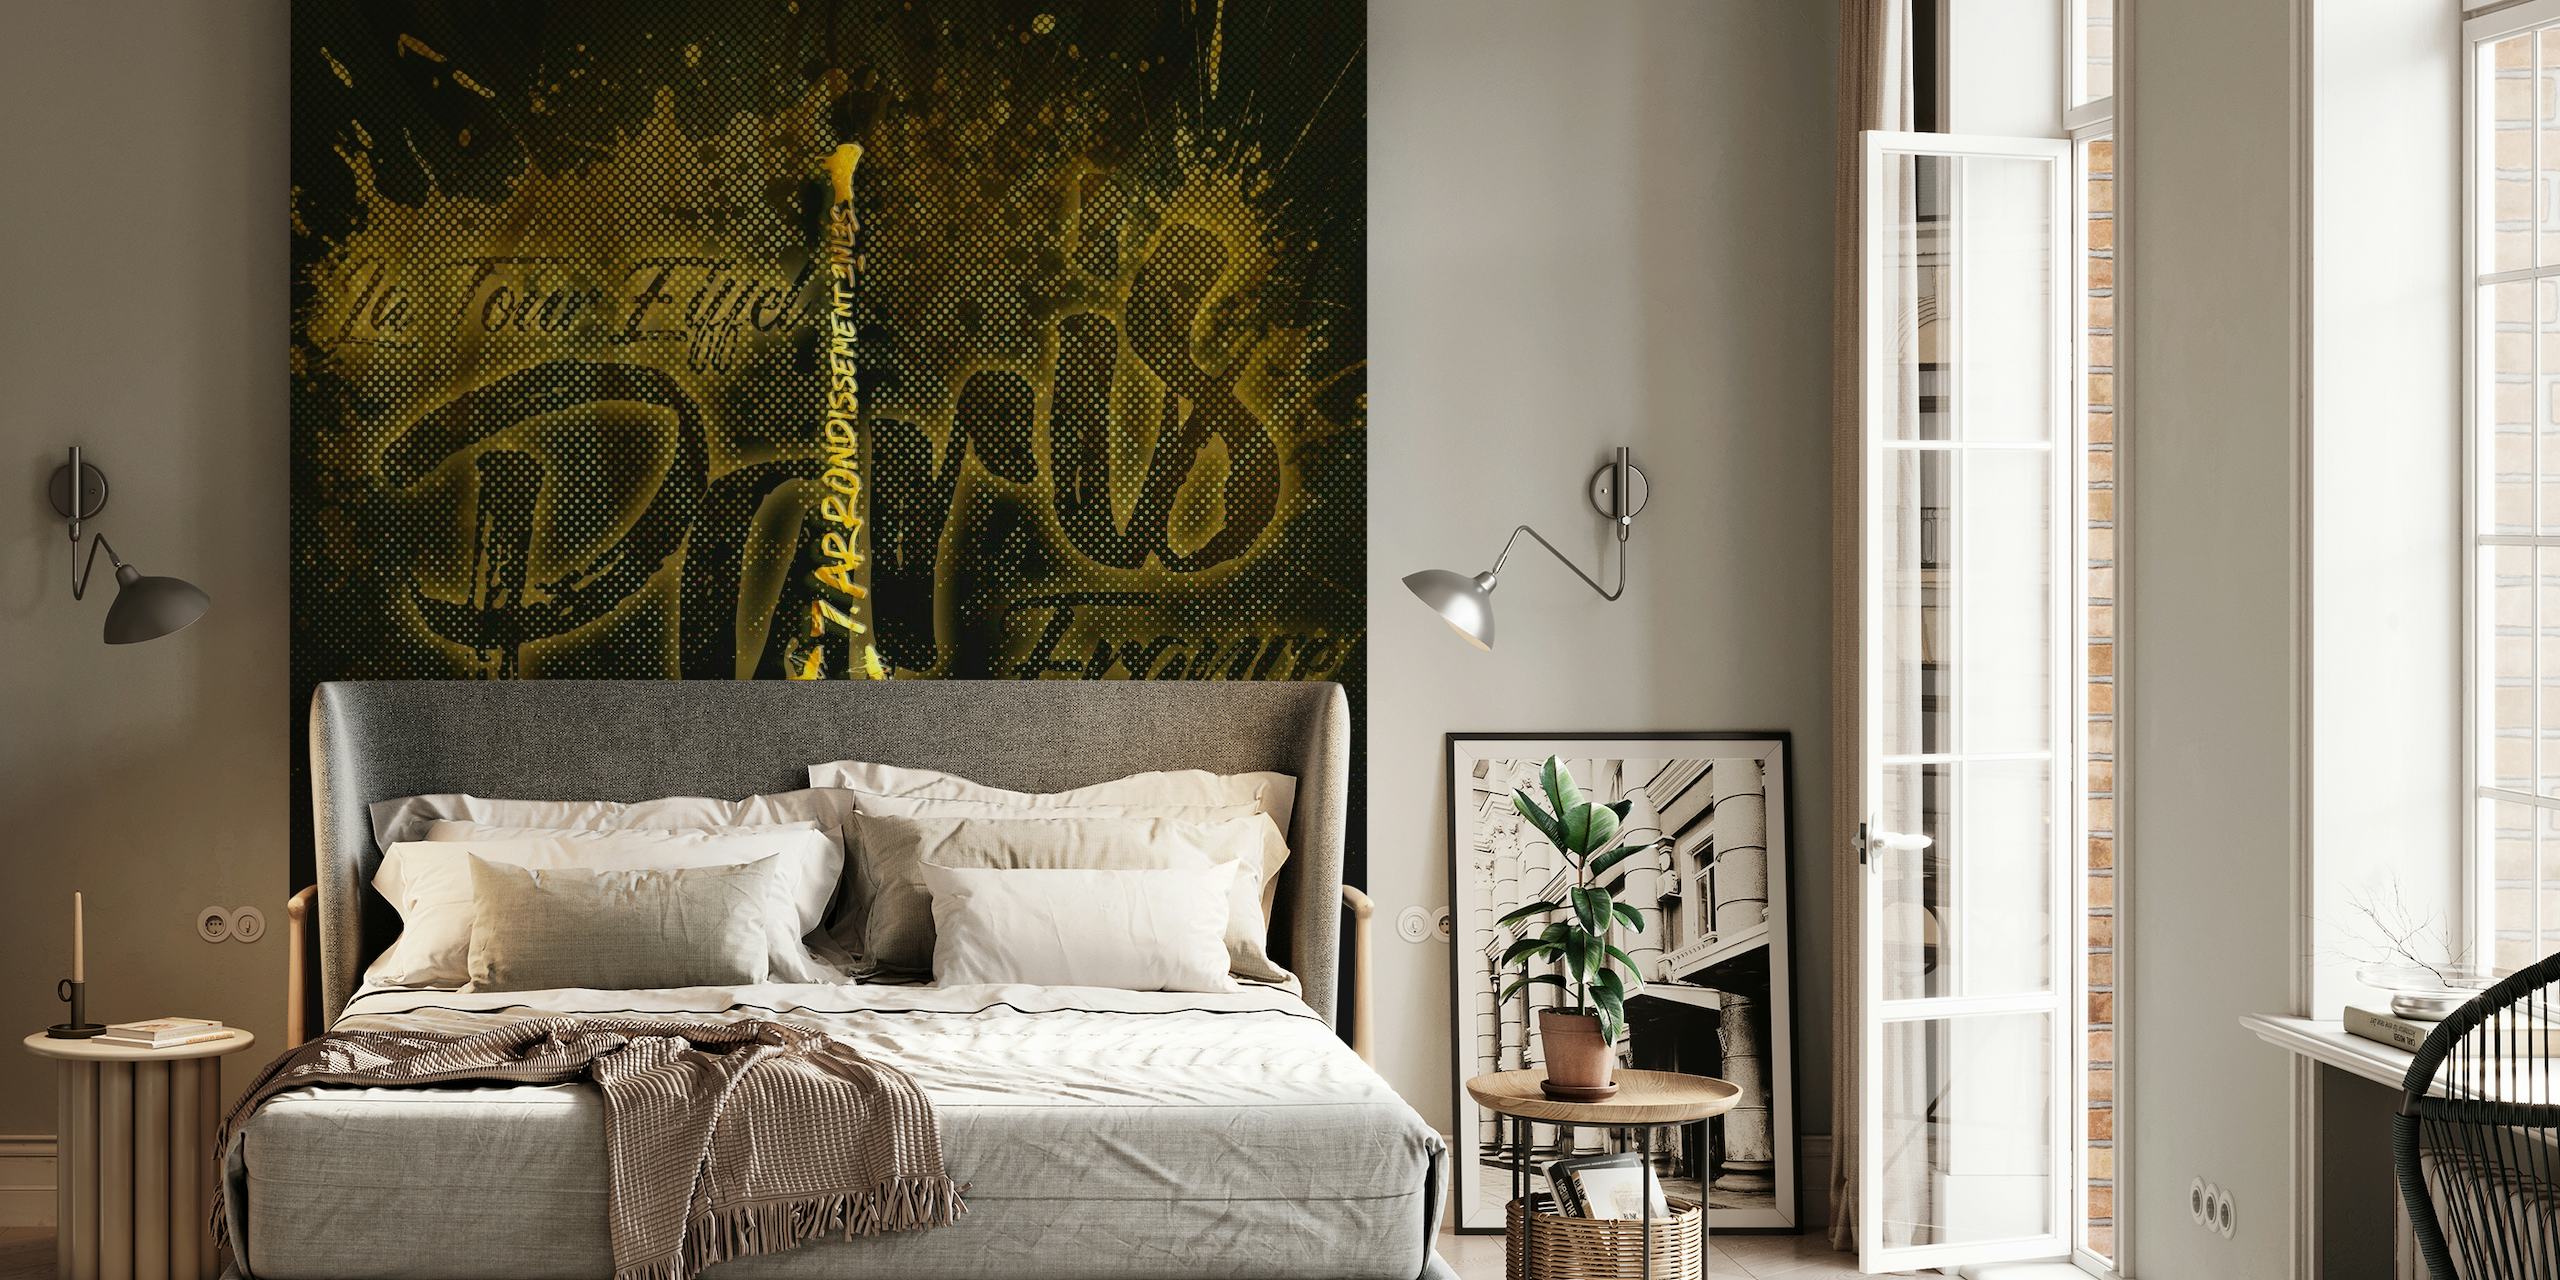 Eiffel Tower Golden Flames wallpaper